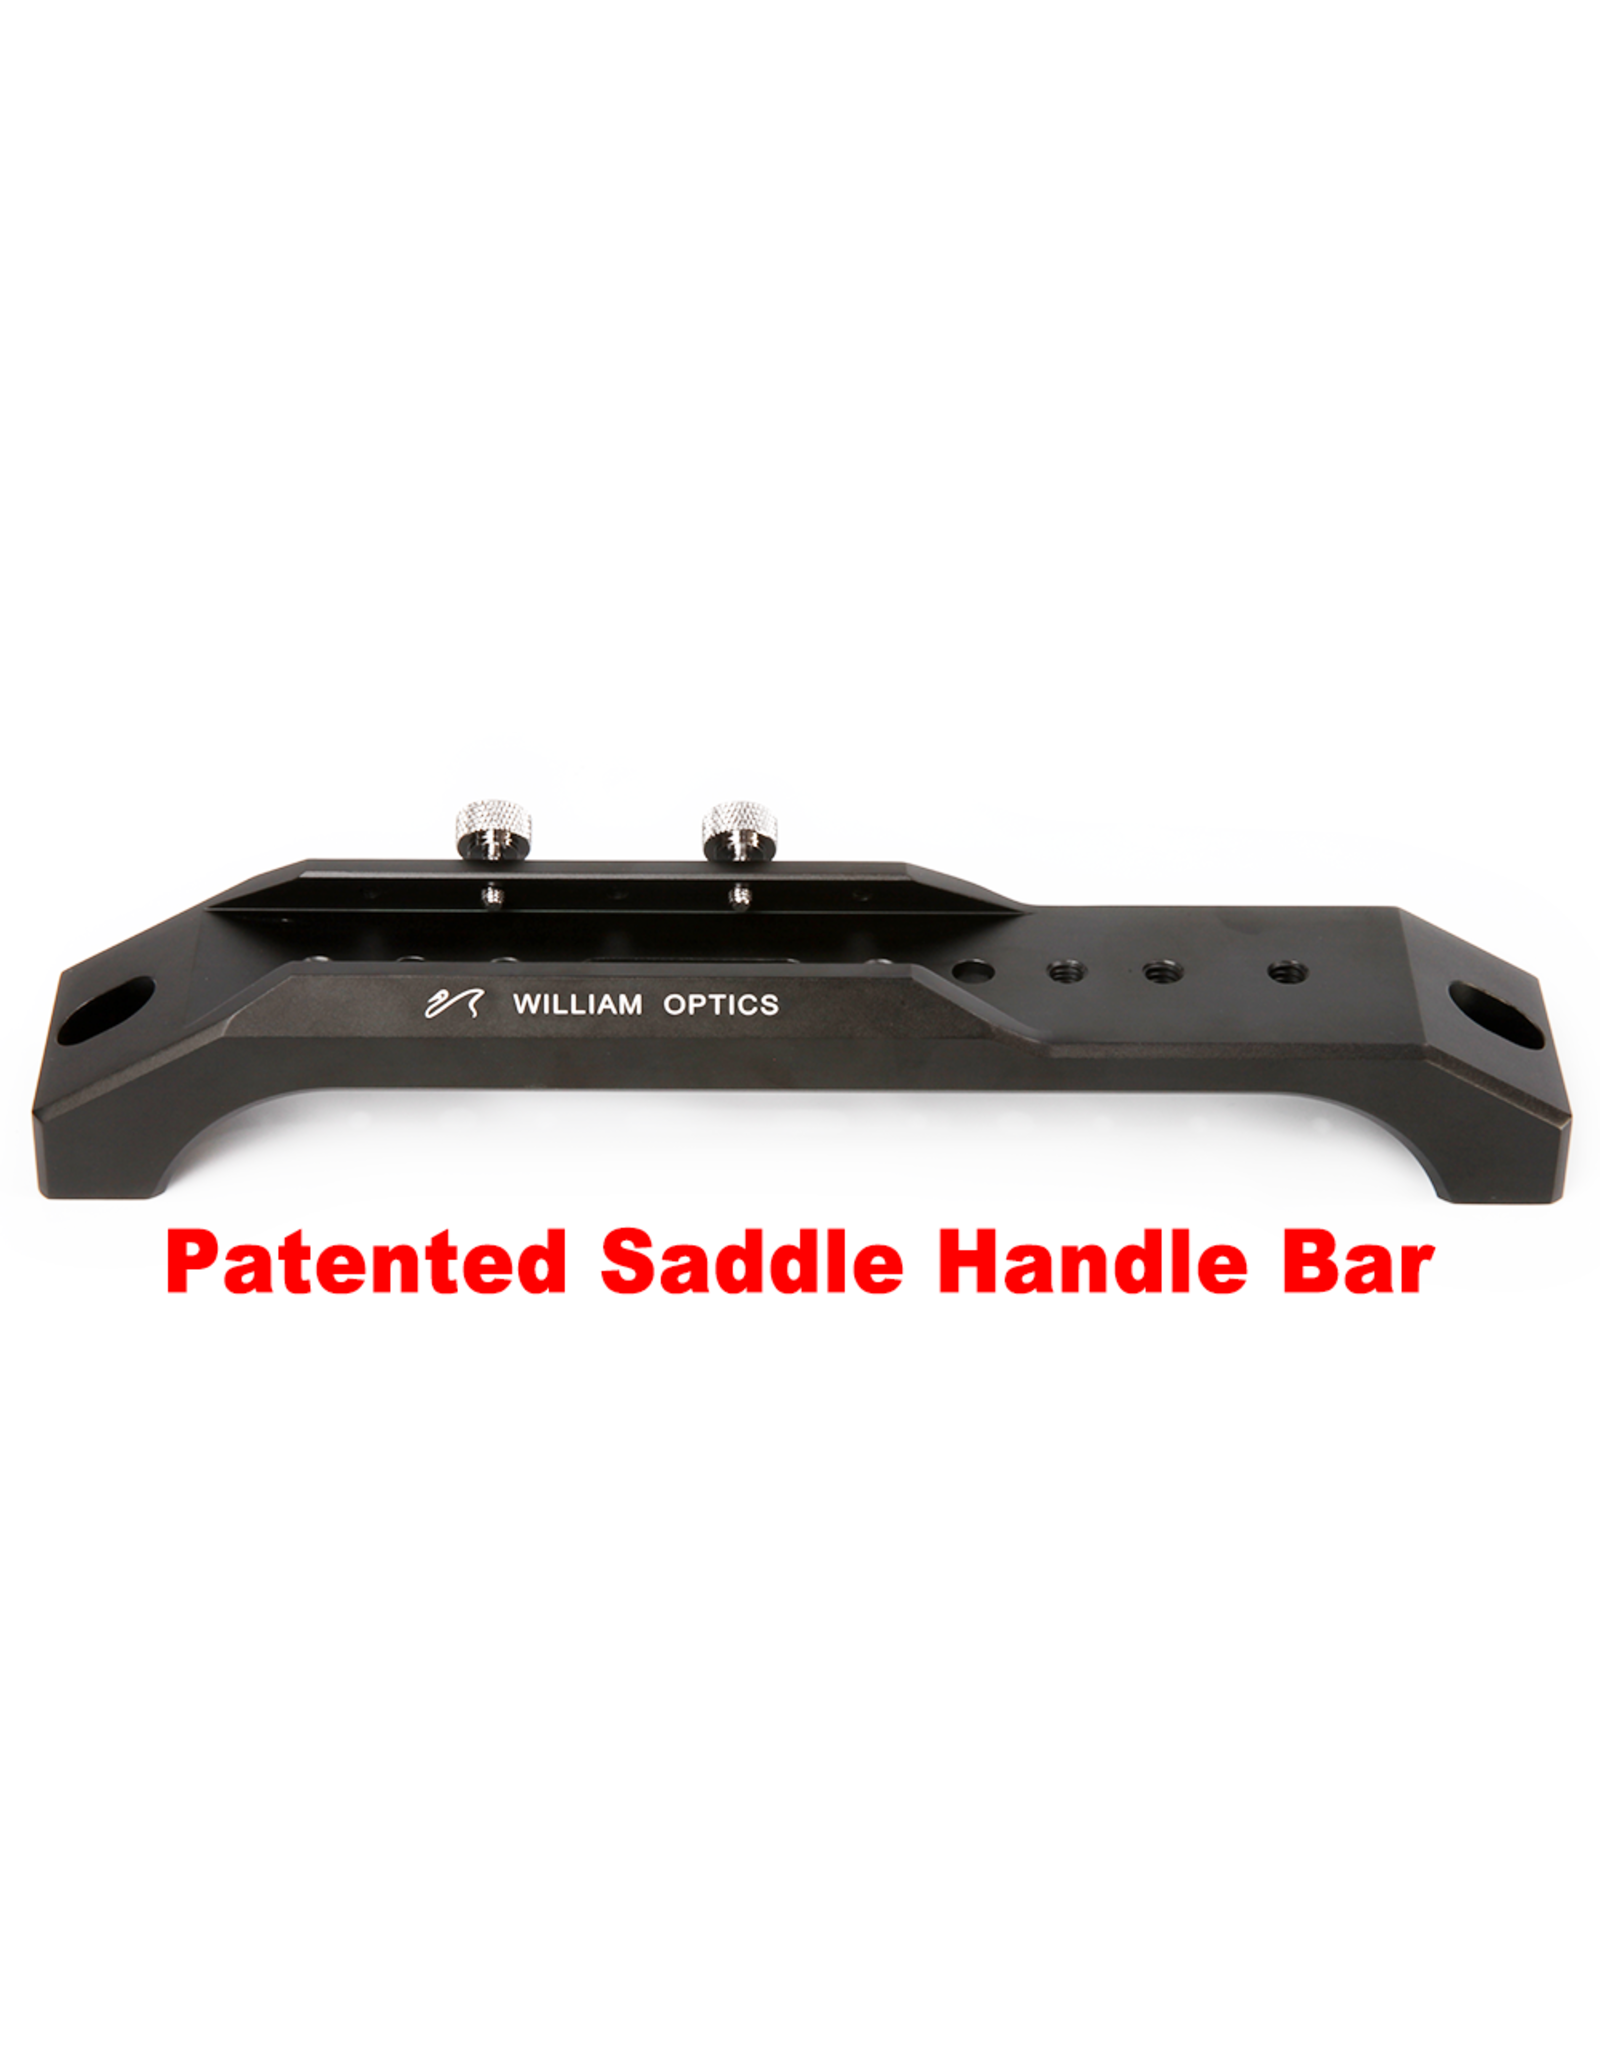 William Optics William Optics Vixen Style 243mm Saddle Handle Bar (Patented)